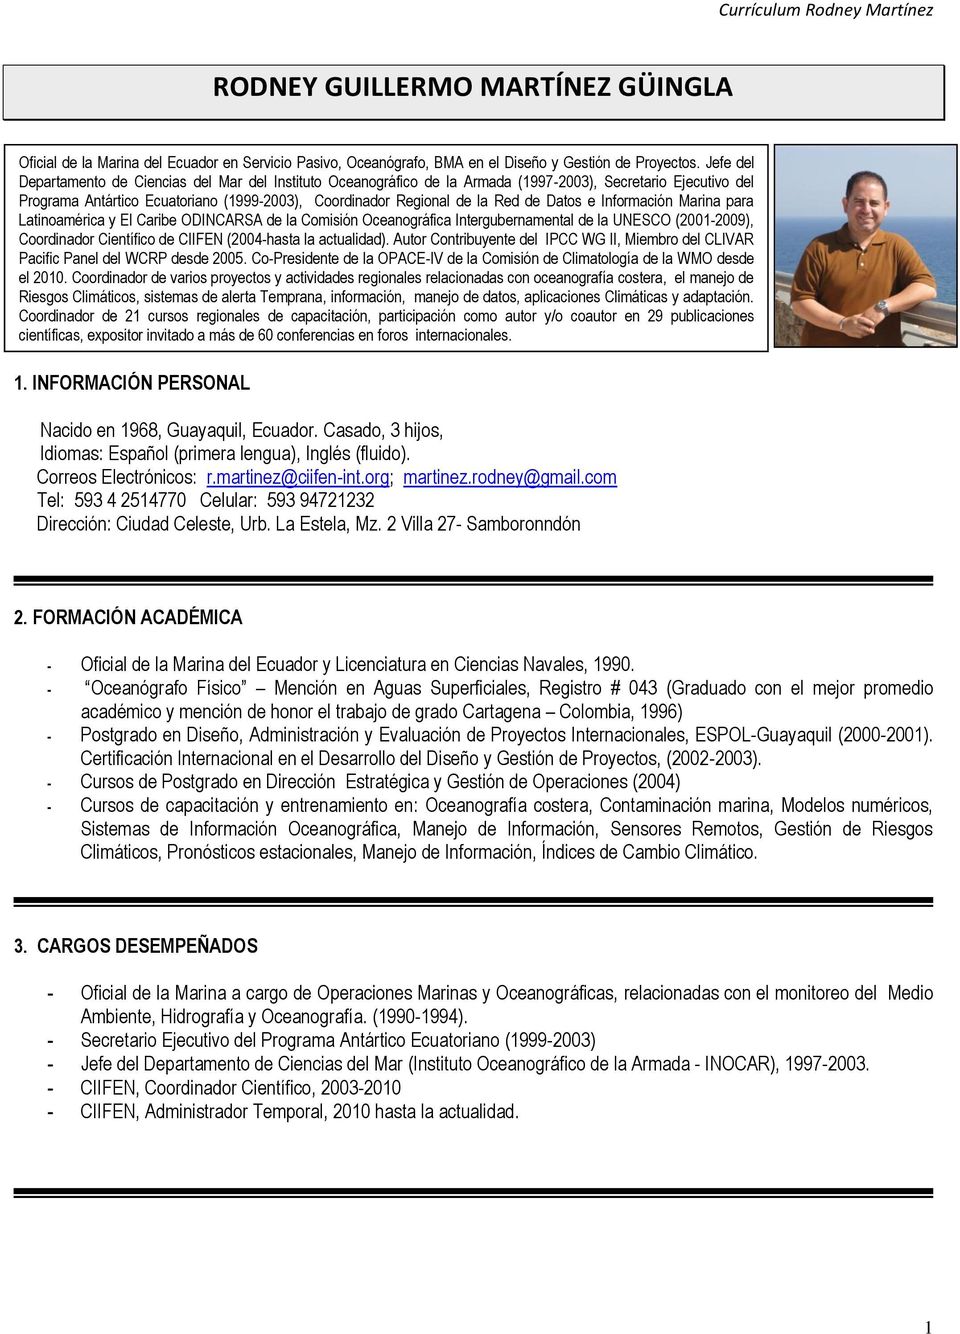 Datos e Información Marina para Latinoamérica y El Caribe ODINCARSA de la Comisión Oceanográfica Intergubernamental de la UNESCO (2001-2009), Coordinador Científico de CIIFEN (2004-hasta la